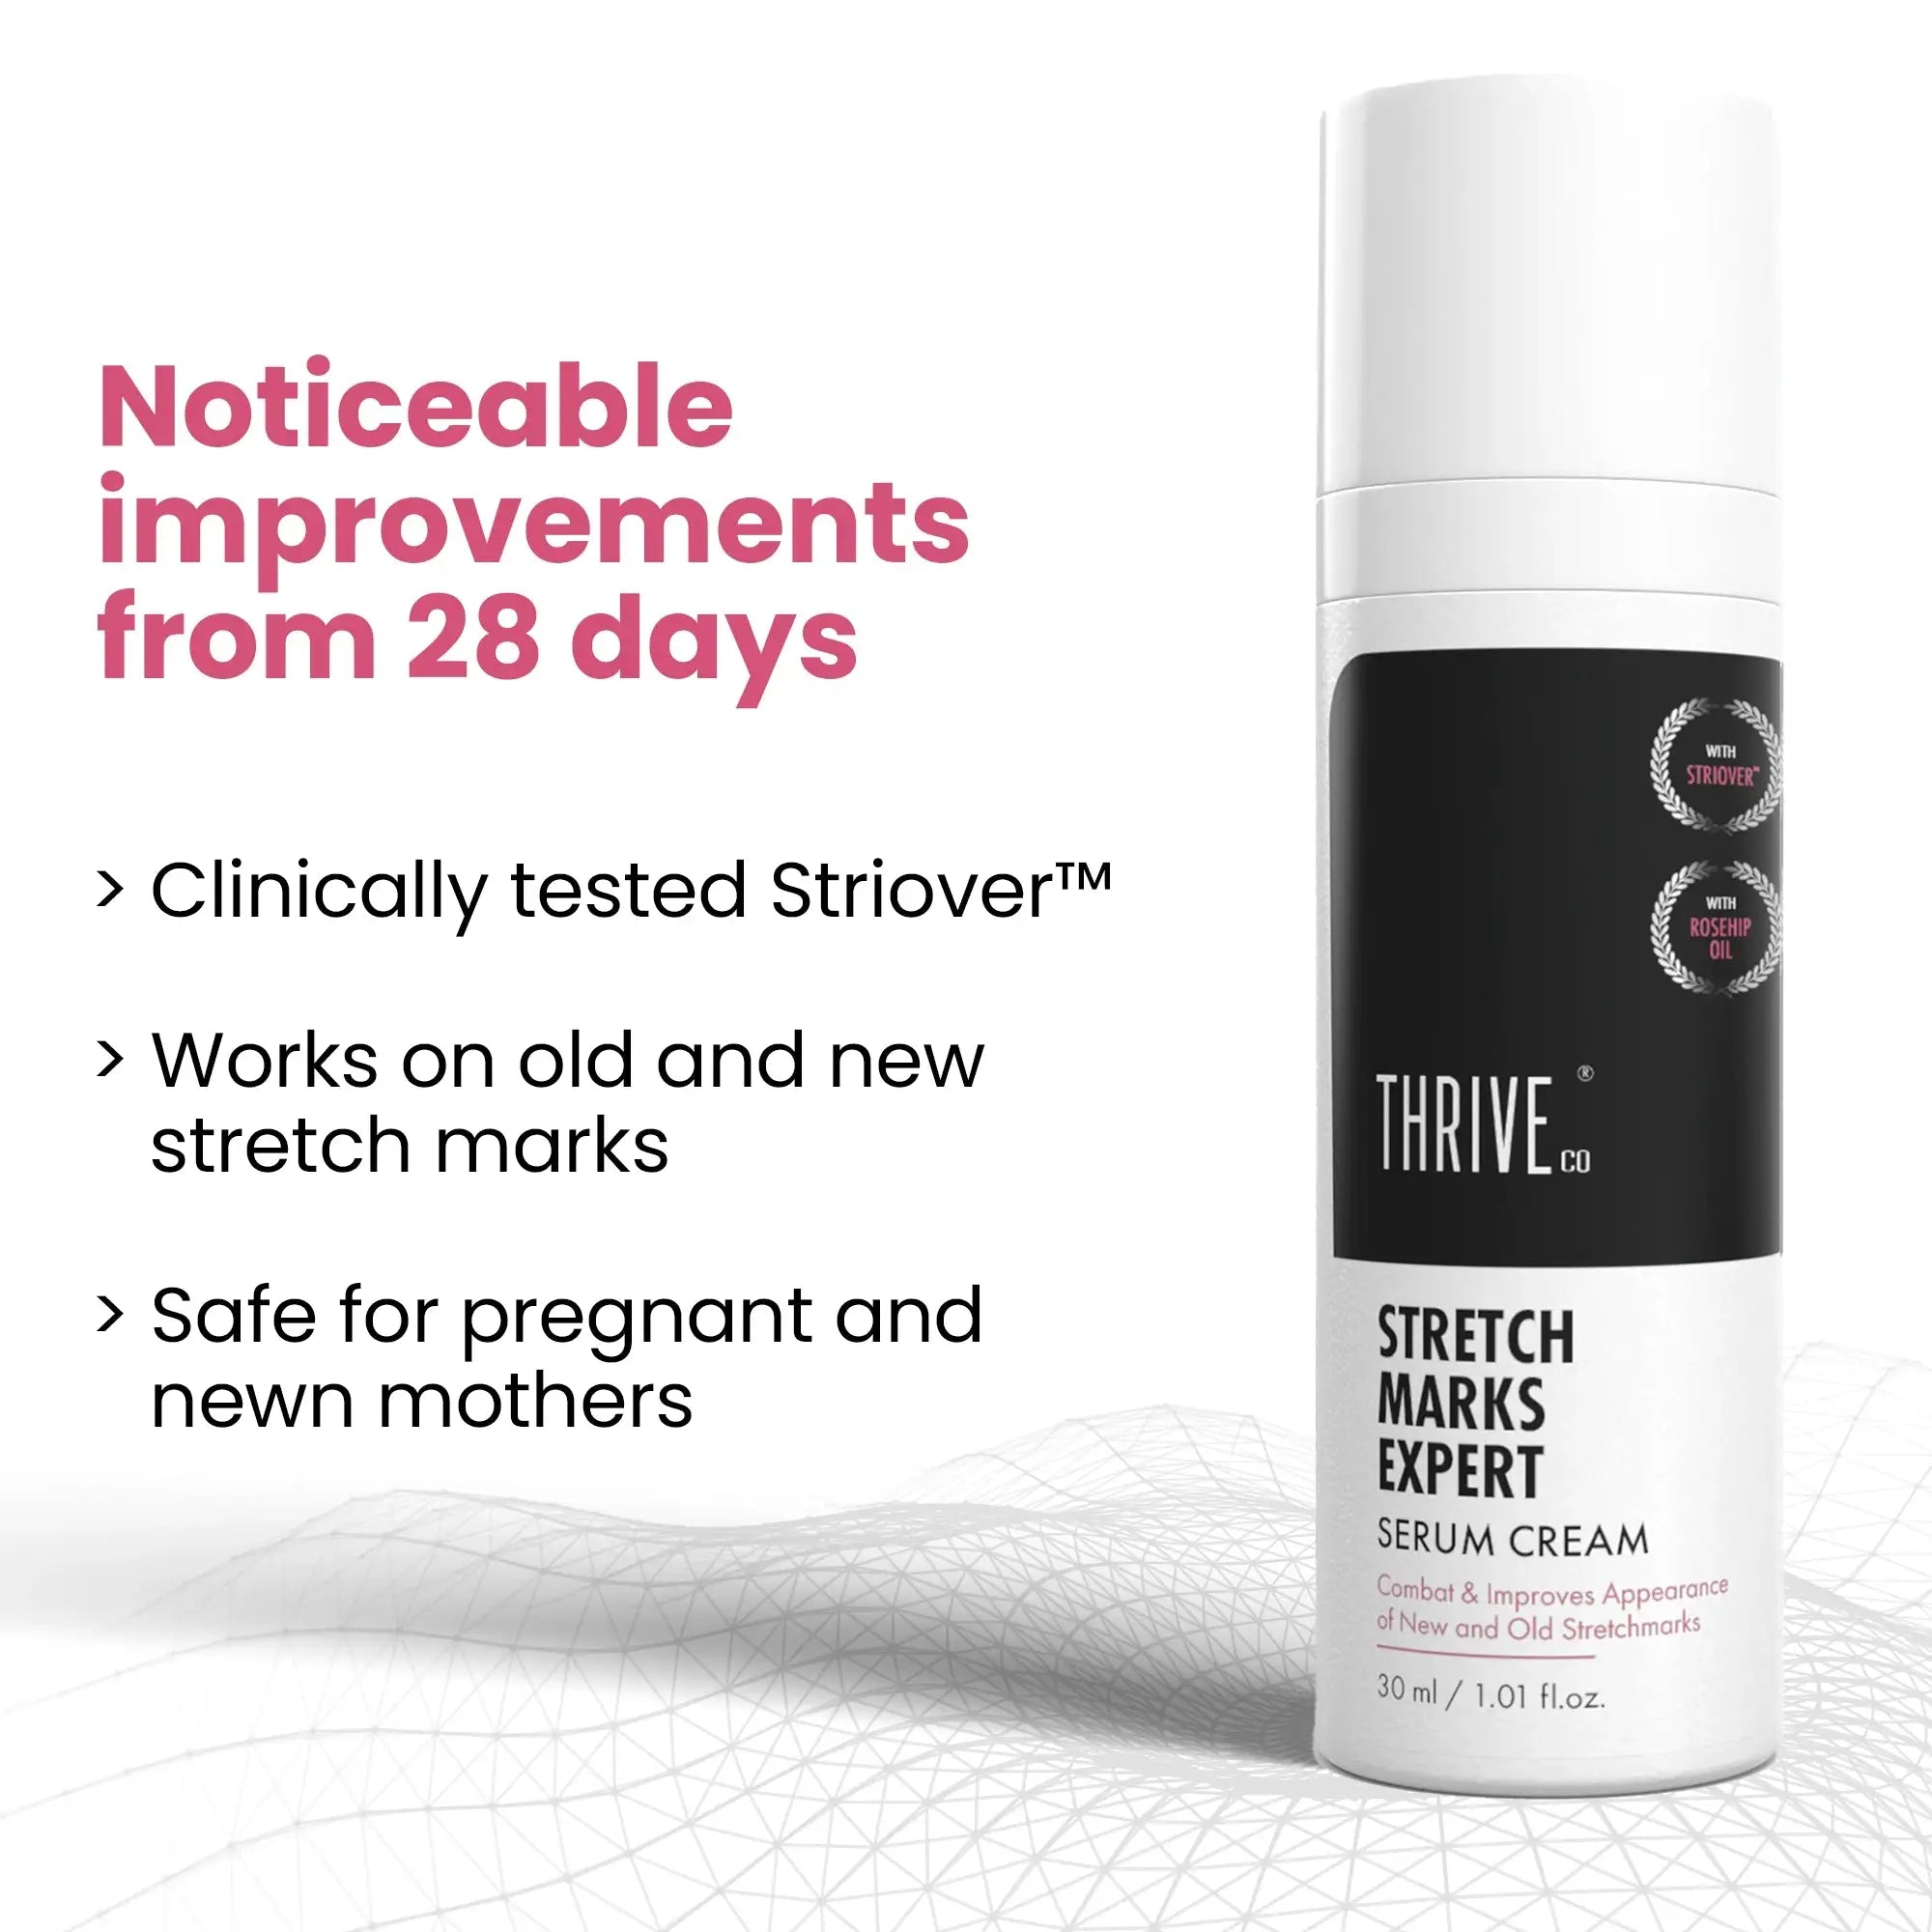 thriveco stretch marks expert cream